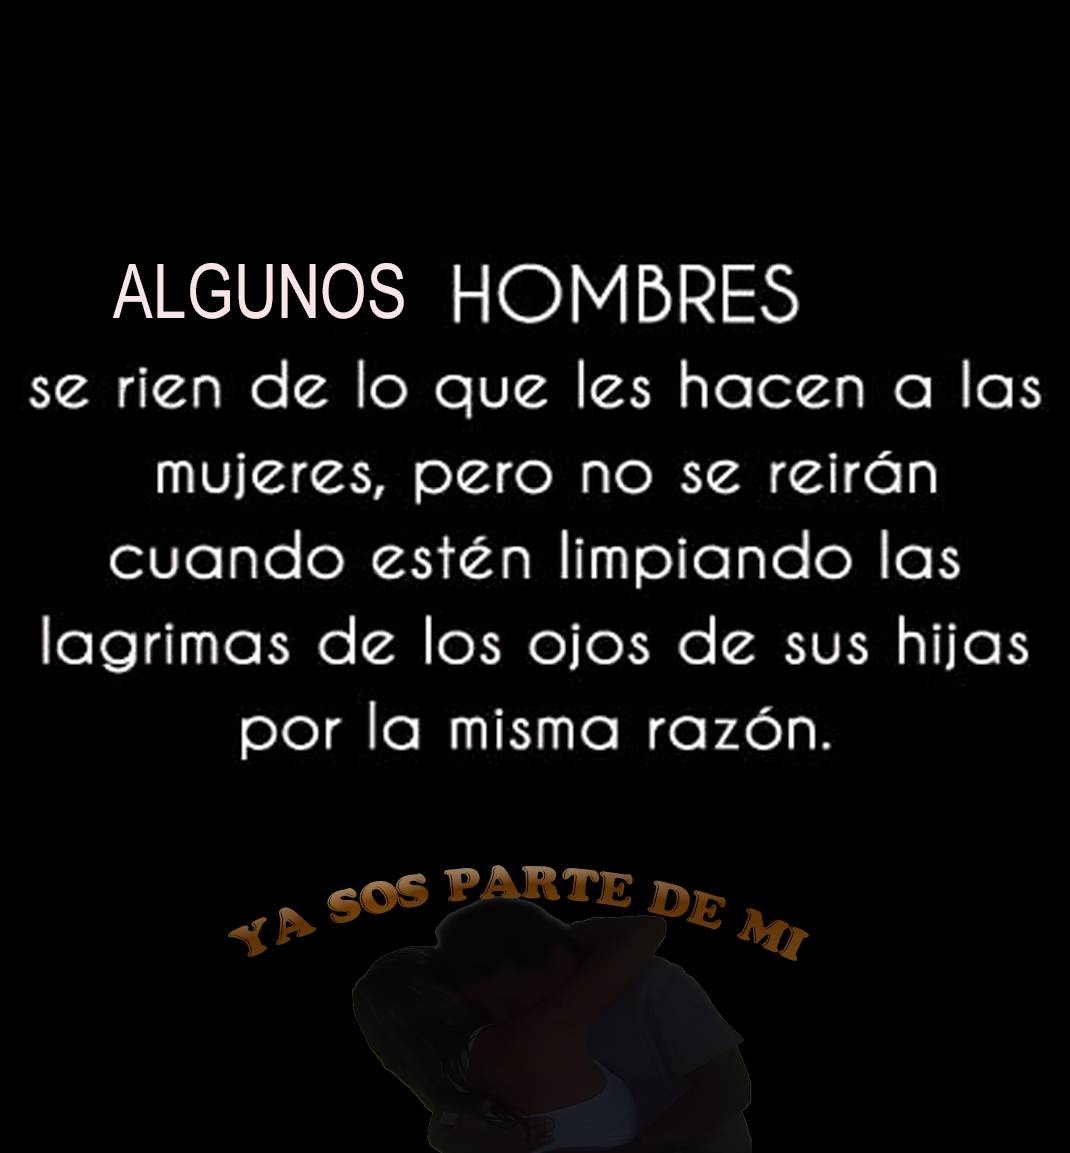 ALGUNOS HOMBRES